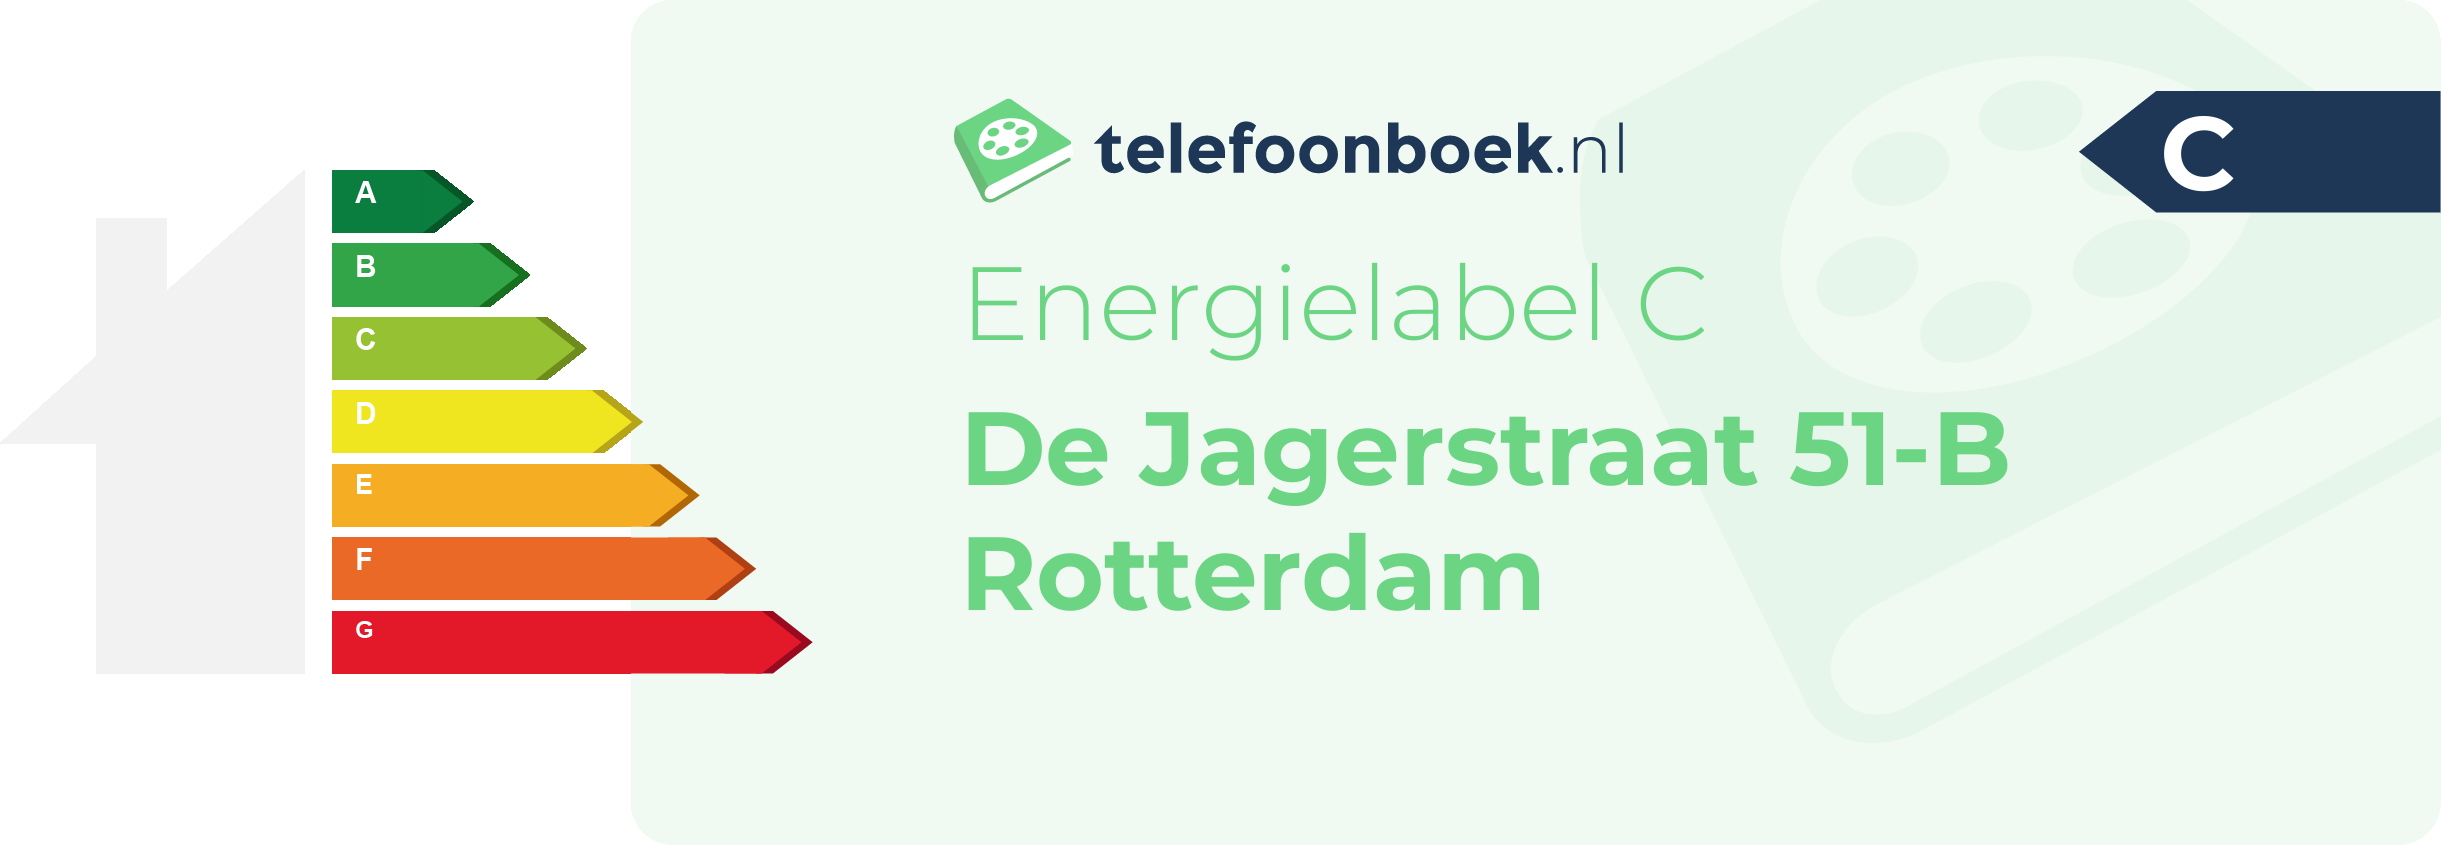 Energielabel De Jagerstraat 51-B Rotterdam